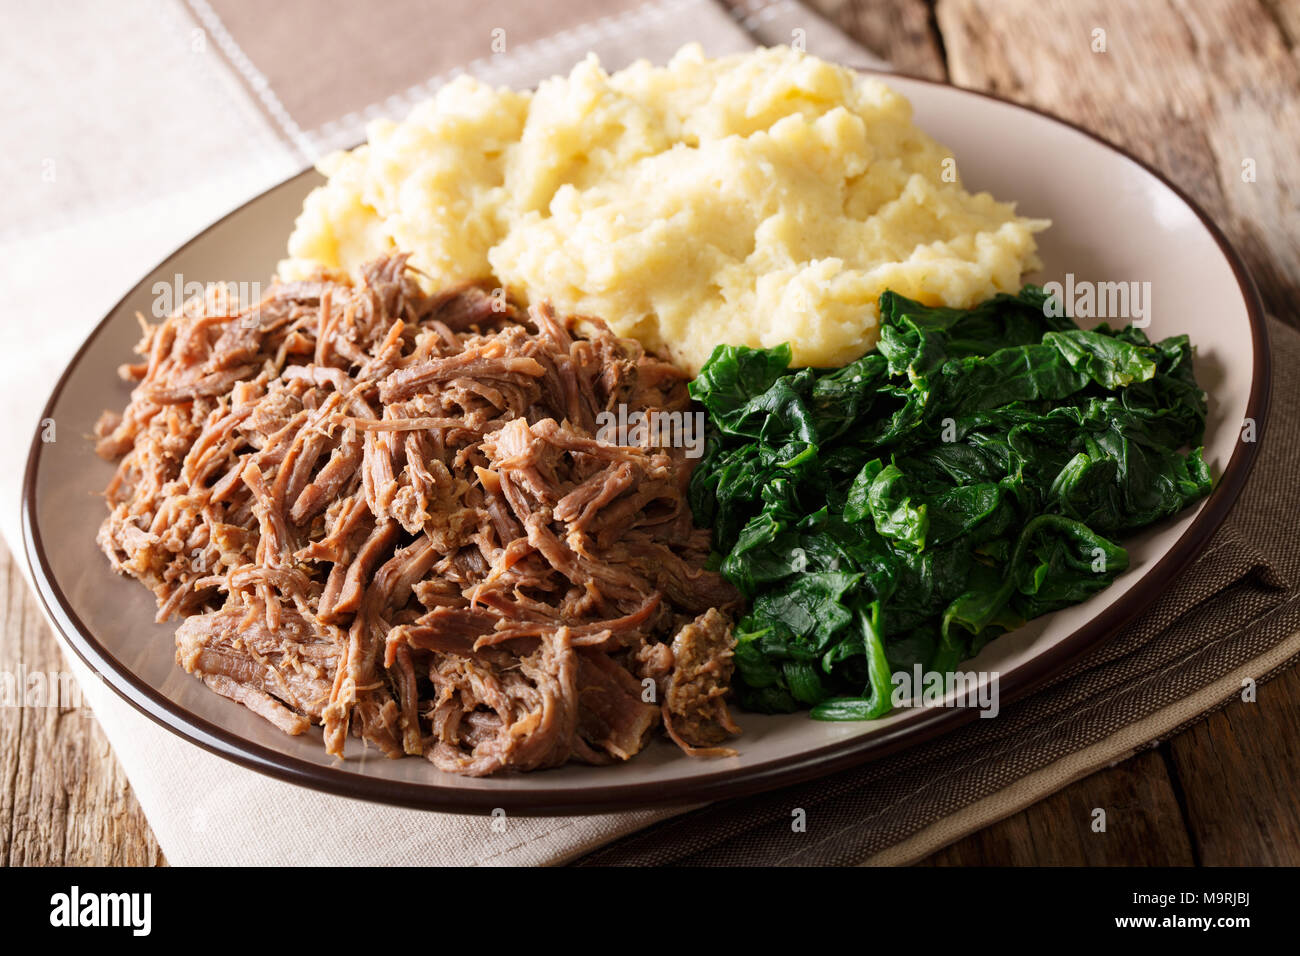 Südafrikanisches Essen: - Seswaa Shredded Beef mit sadza Porridge und Spinat close-up auf einem Teller auf den Tisch. Horizontale Stockfoto